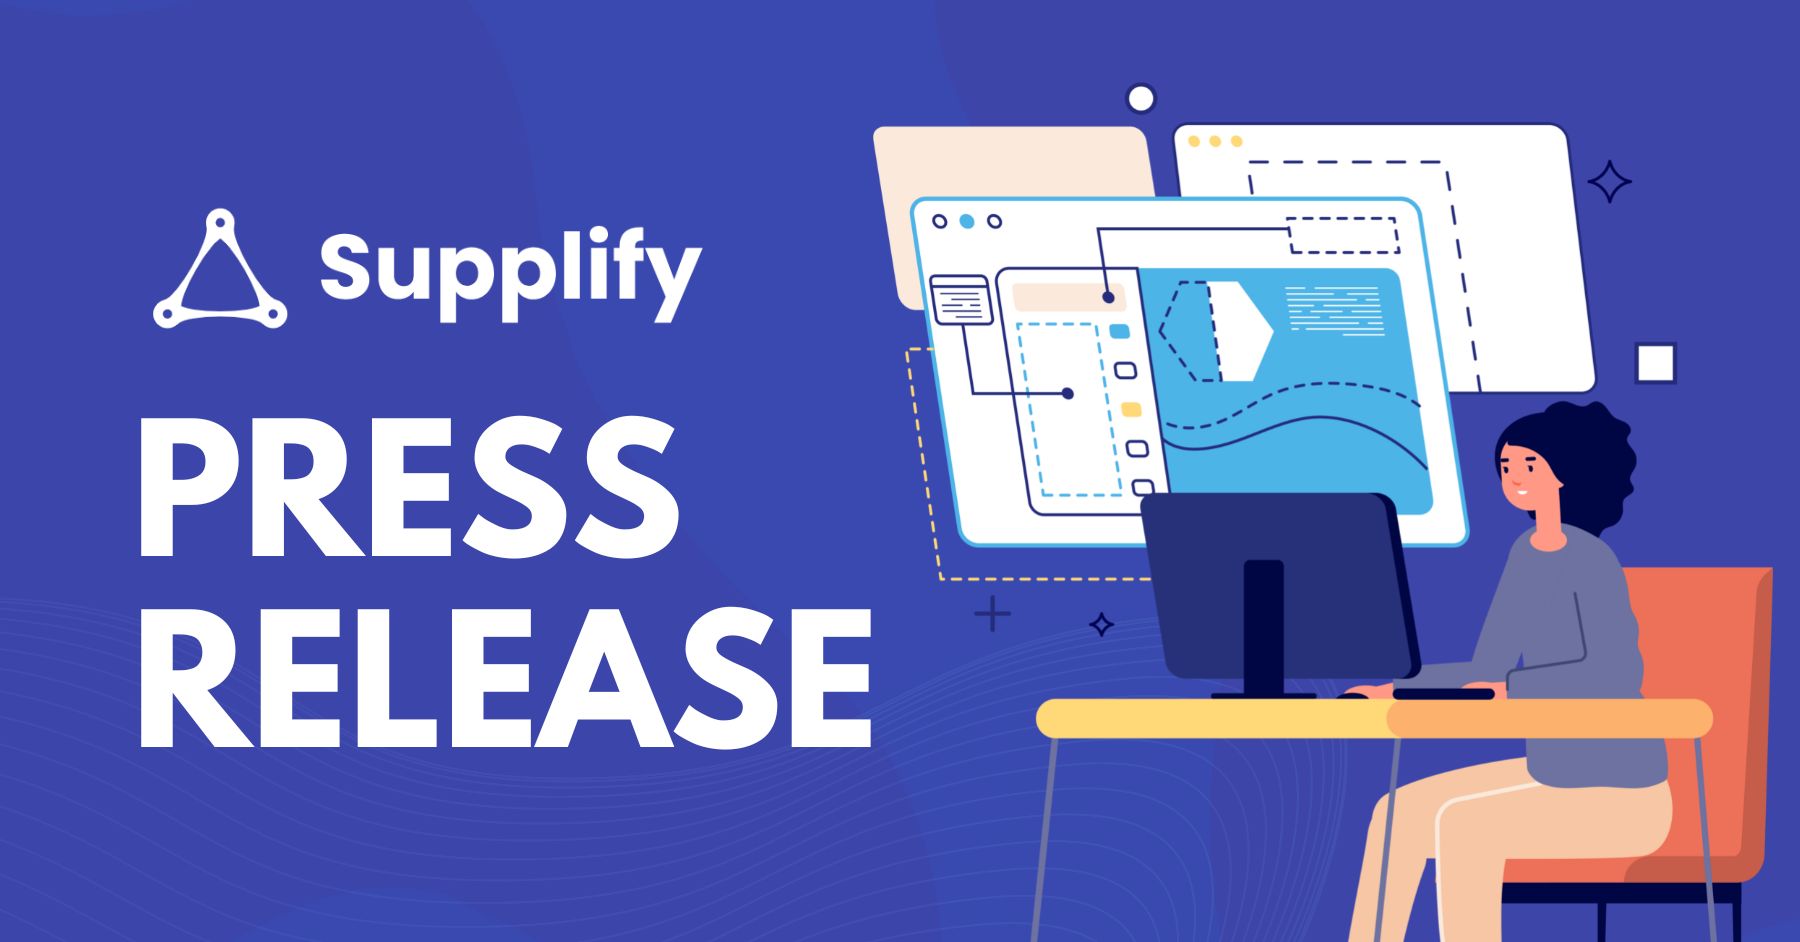 Supplify Platform Beta Version Launch Featured Image